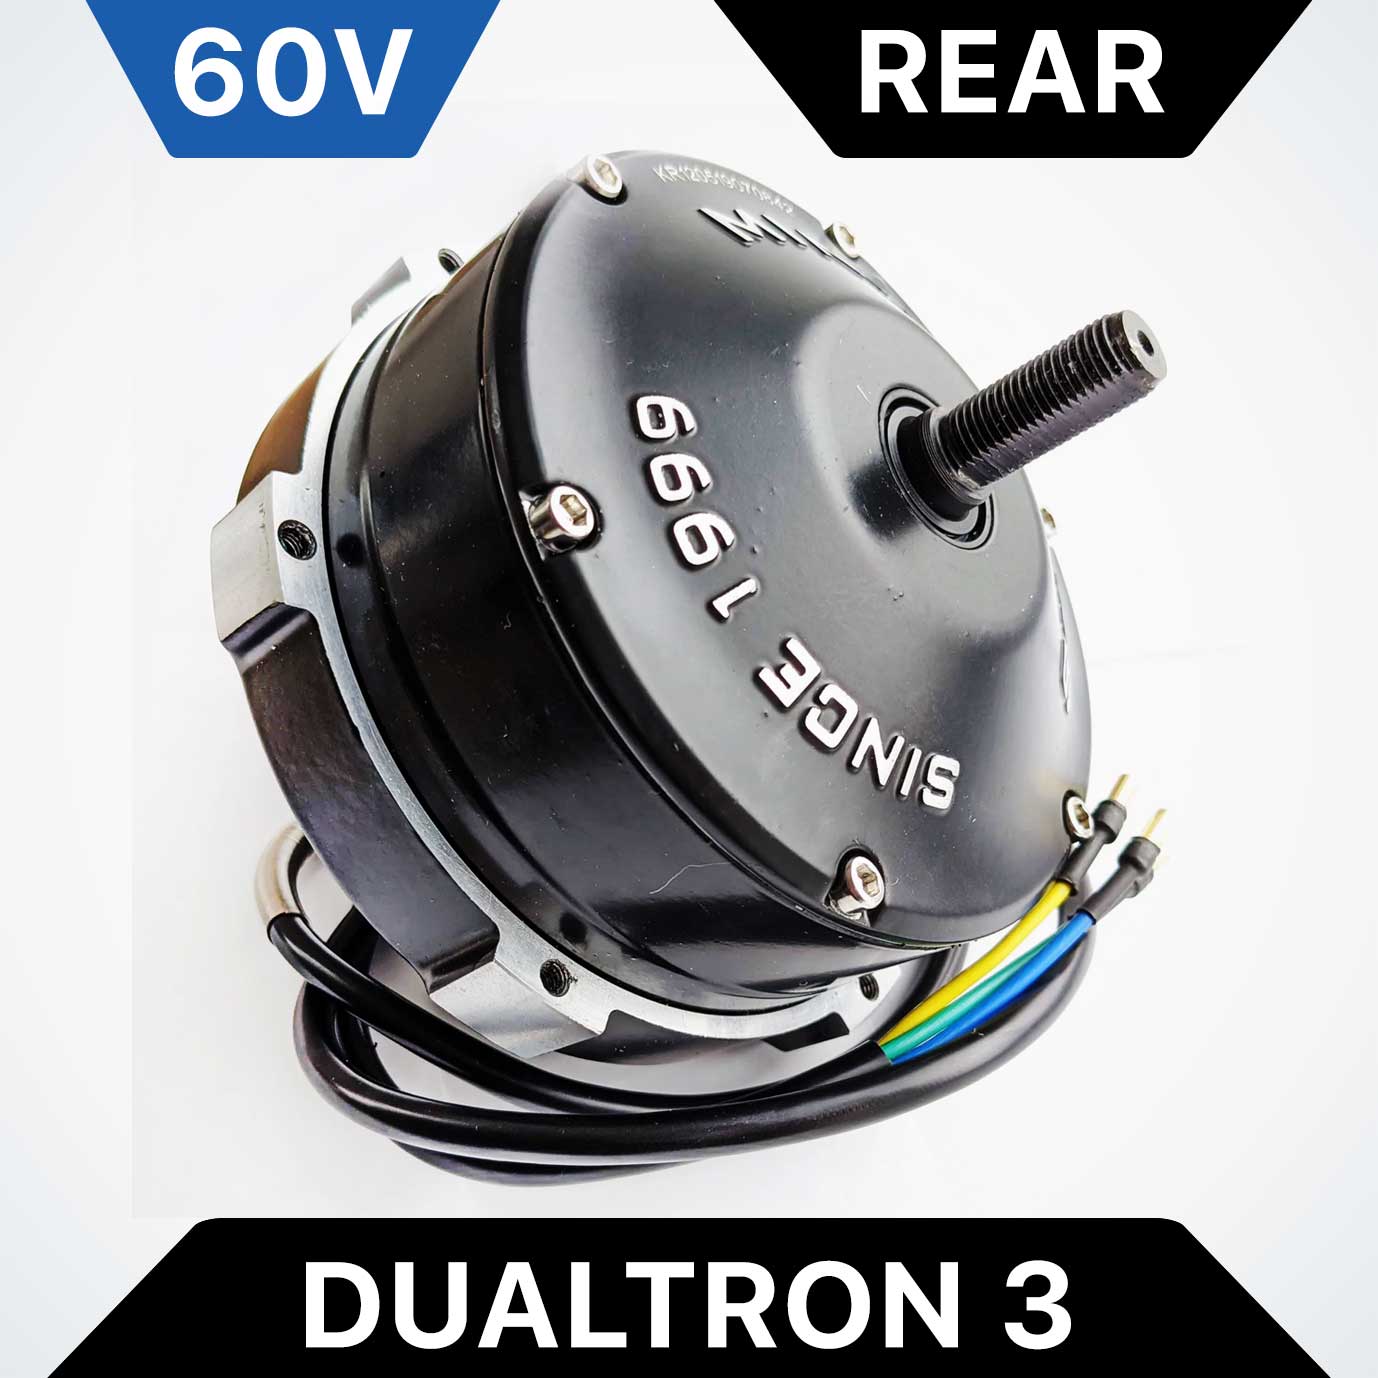 Rear Motor for Dualtron 3 - 60V